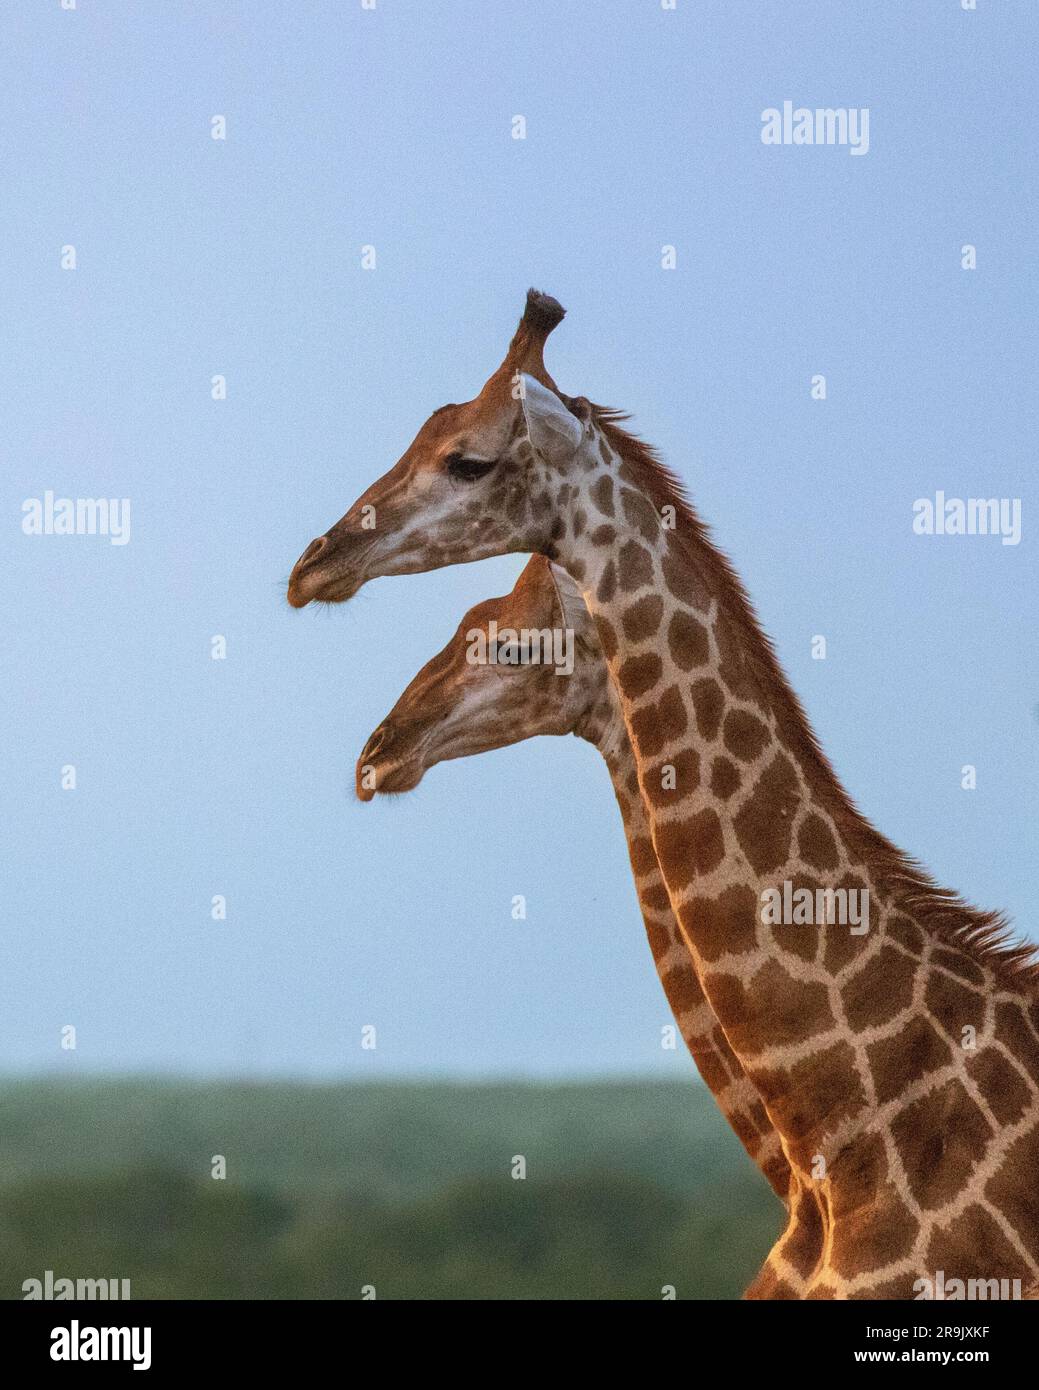 Le profil latéral de deux girafes, Giraffa, debout l'une à côté de l'autre. Banque D'Images